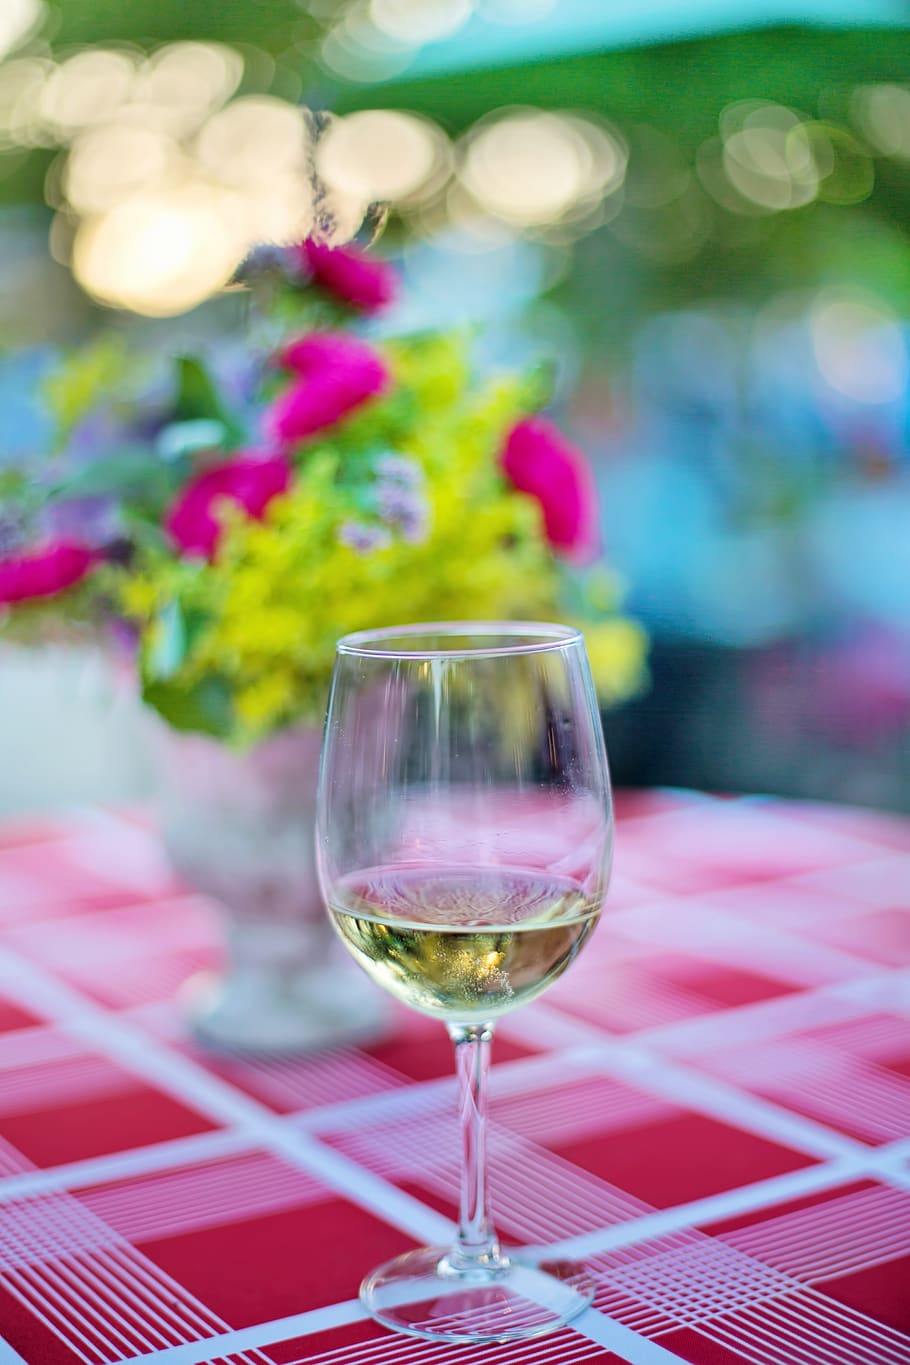 segelas anggur, anggur putih, anggur, piala, minuman, alkohol, gelas anggur, perayaan, kaca, minum